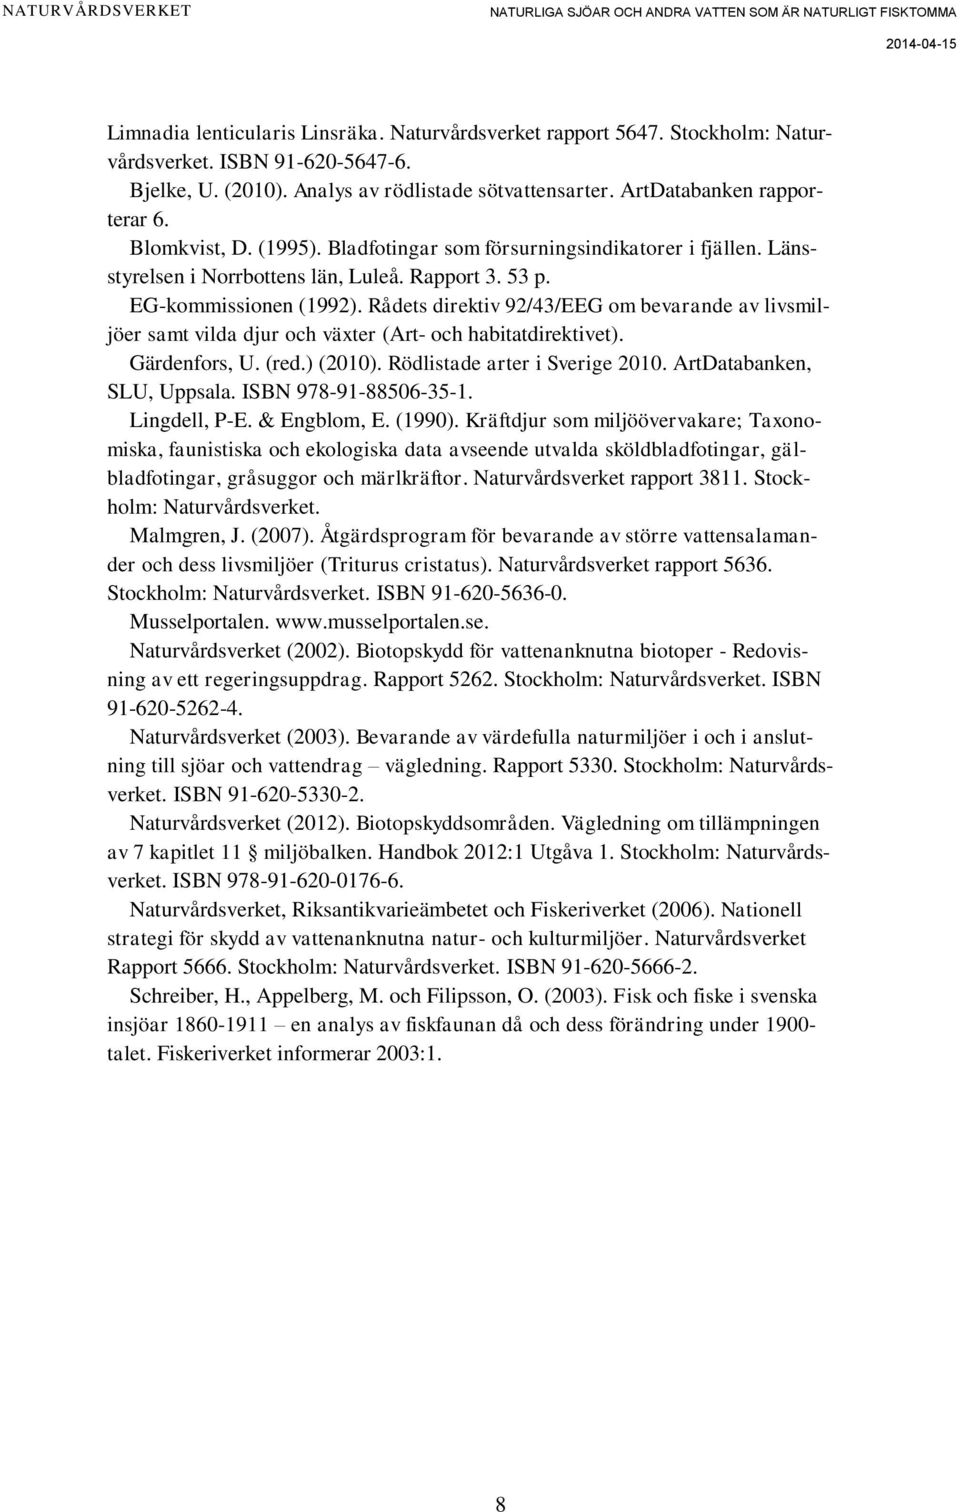 Rådets direktiv 92/43/EEG om bevarande av livsmiljöer samt vilda djur och växter (Art- och habitatdirektivet). Gärdenfors, U. (red.) (2010). Rödlistade arter i Sverige 2010.